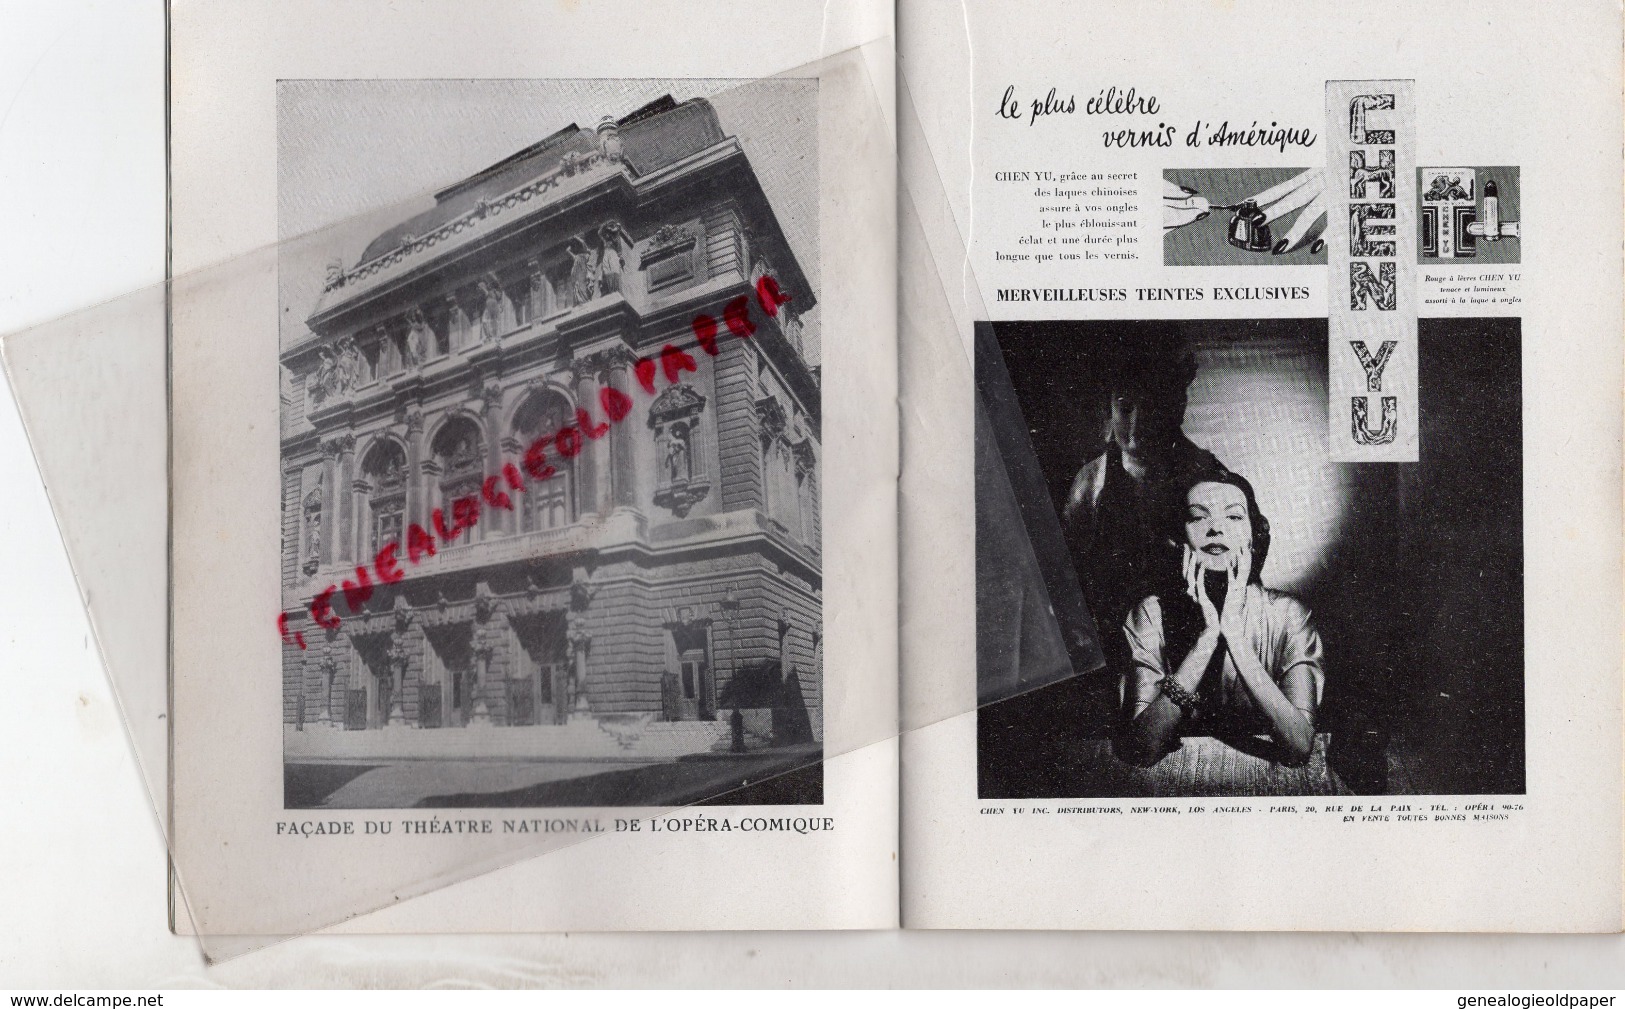 THEATRE NATIONAL DE L' OPERA COMIQUE - LE BARBIER DE SEVILLE-9 JUIN 1951- BAUDECROUX-TURBA RABIER-AMADE-LEGOUHY-CLEMENT - Programas